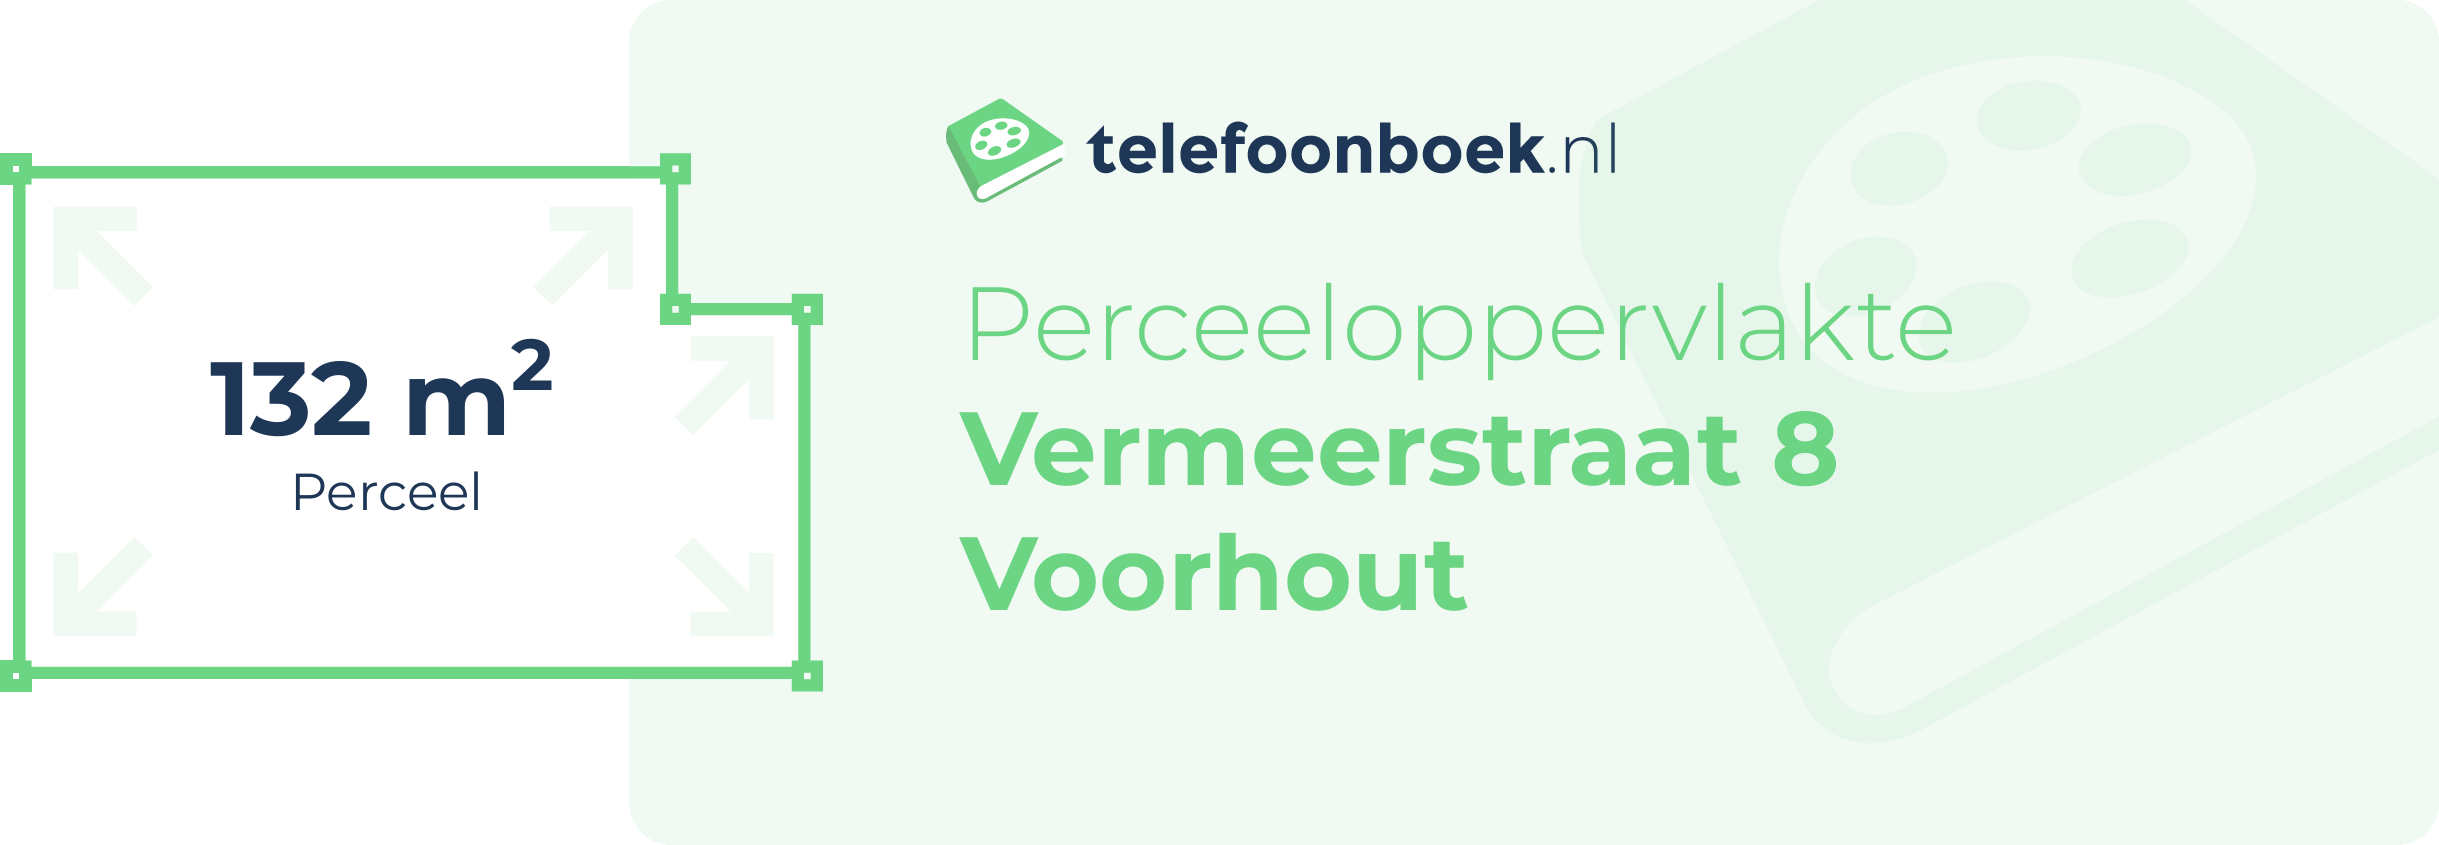 Perceeloppervlakte Vermeerstraat 8 Voorhout